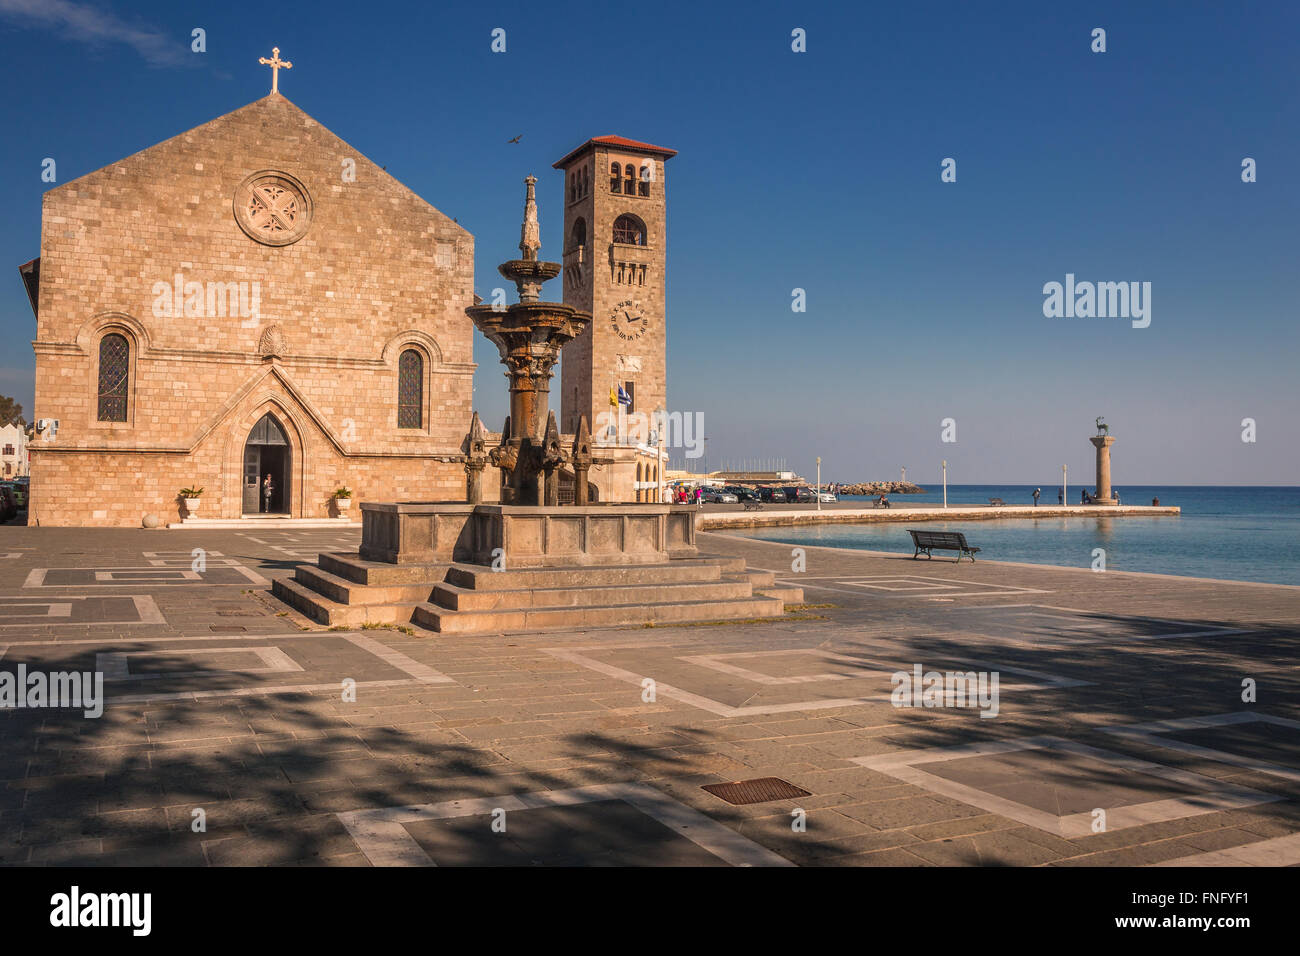 Evangelismos Church (aussi appelée l'église de l'Annonciation), le port de Mandraki, l'île de Rhodes, Grèce. Banque D'Images